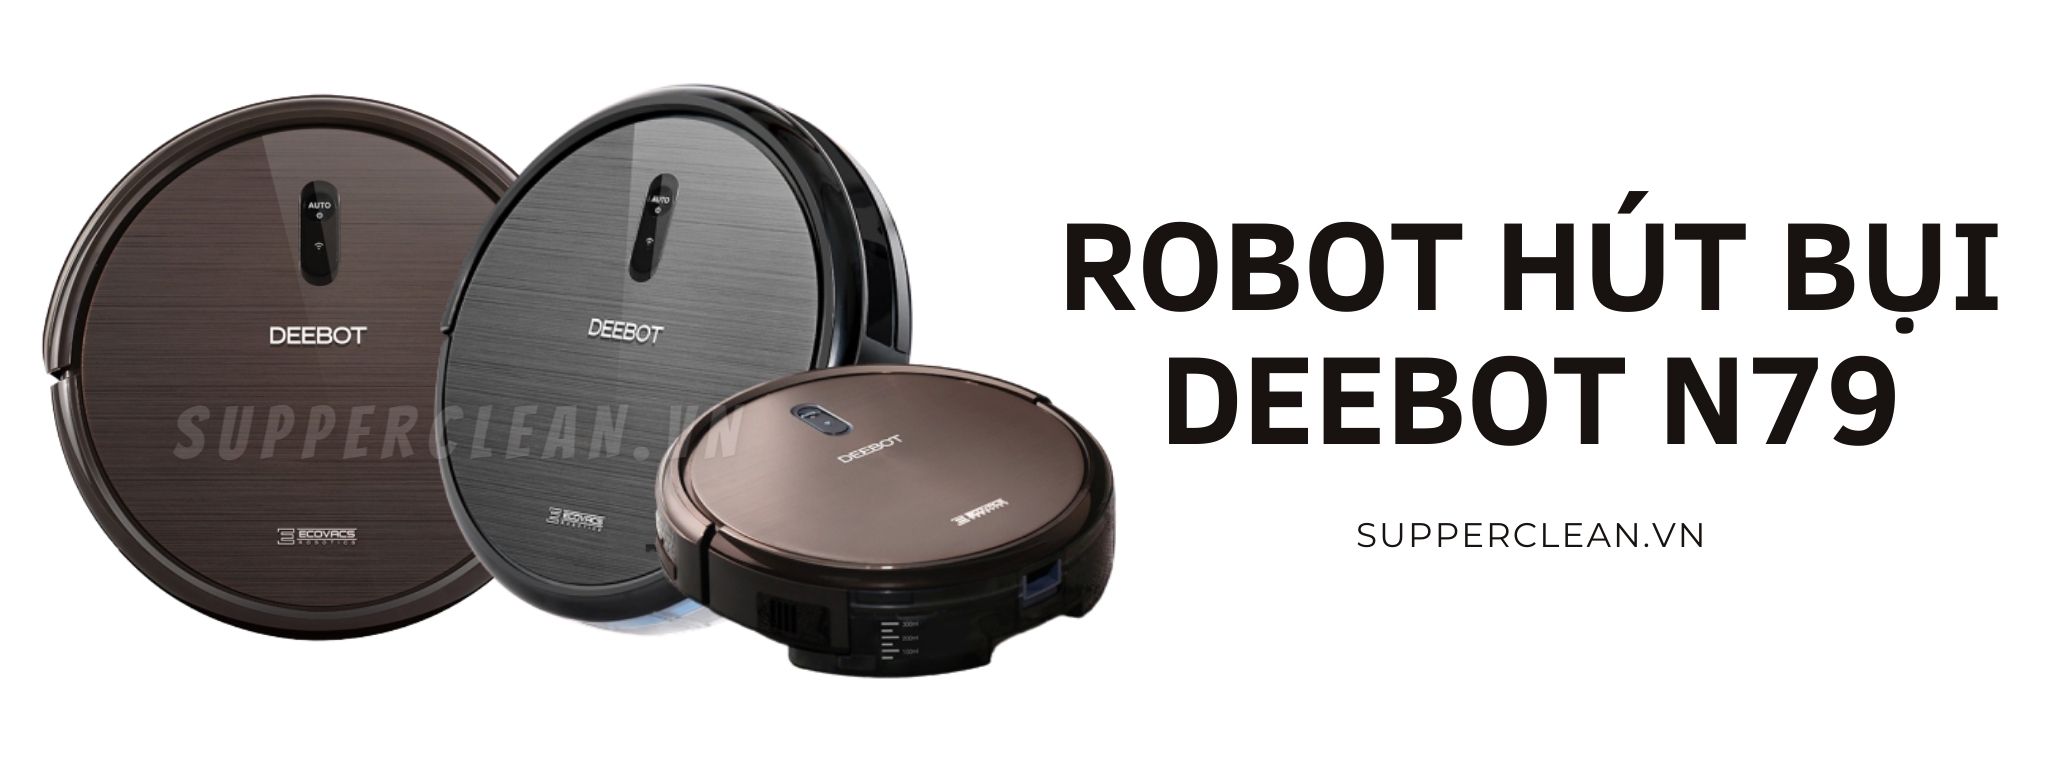 robot-hut-bui-deebot-n79